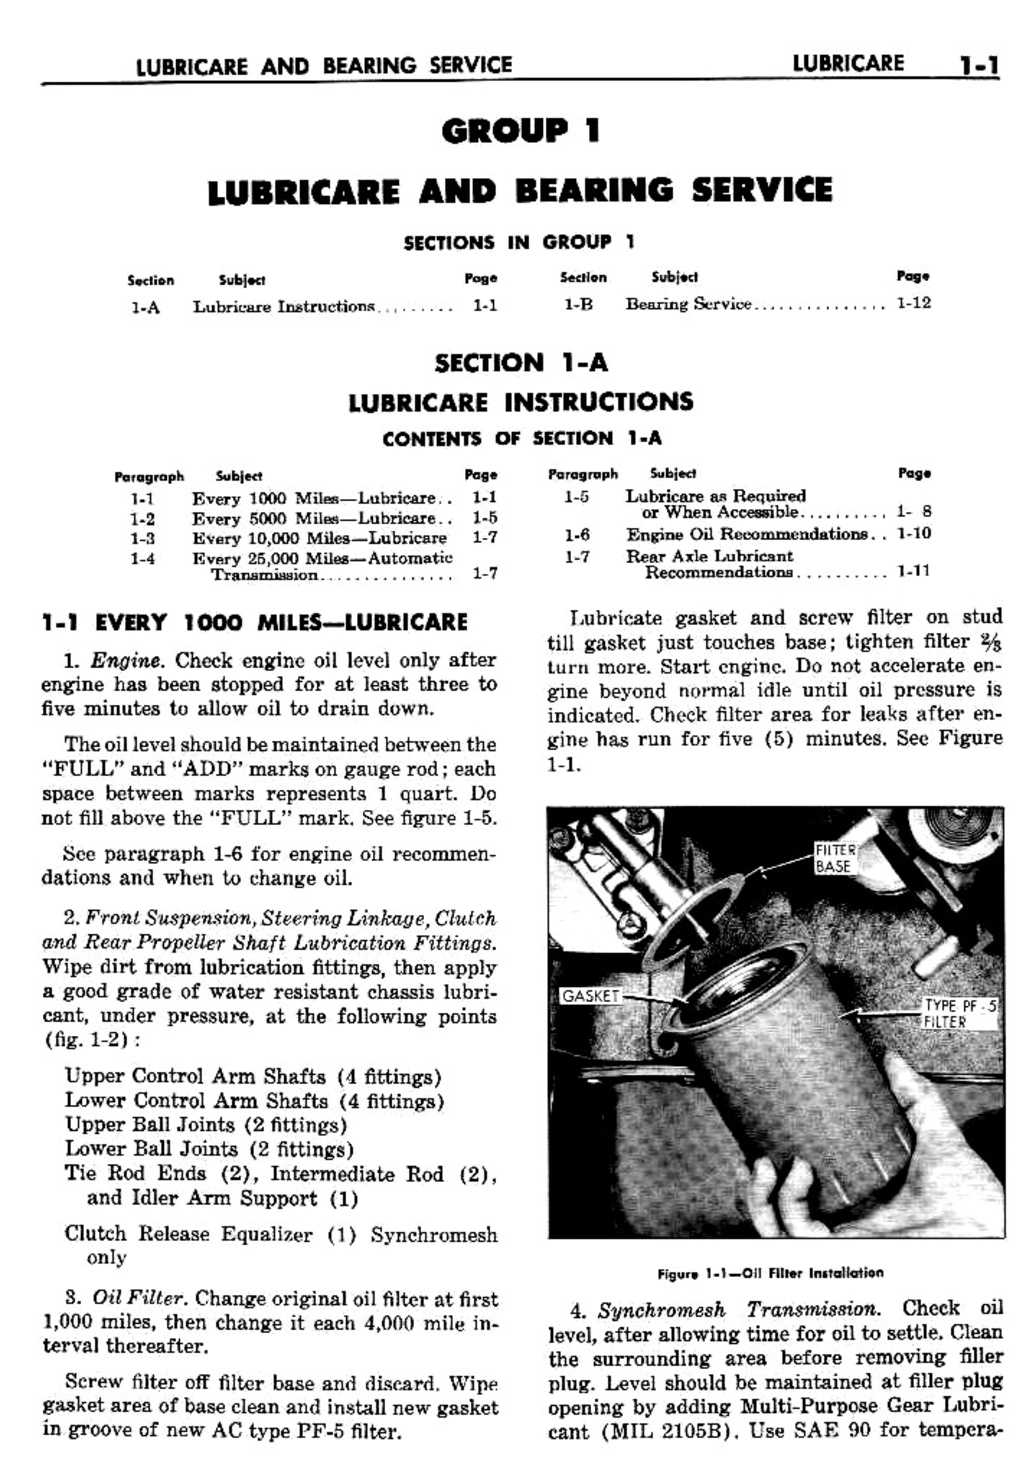 n_02 1960 Buick Shop Manual - Lubricare-001-001.jpg